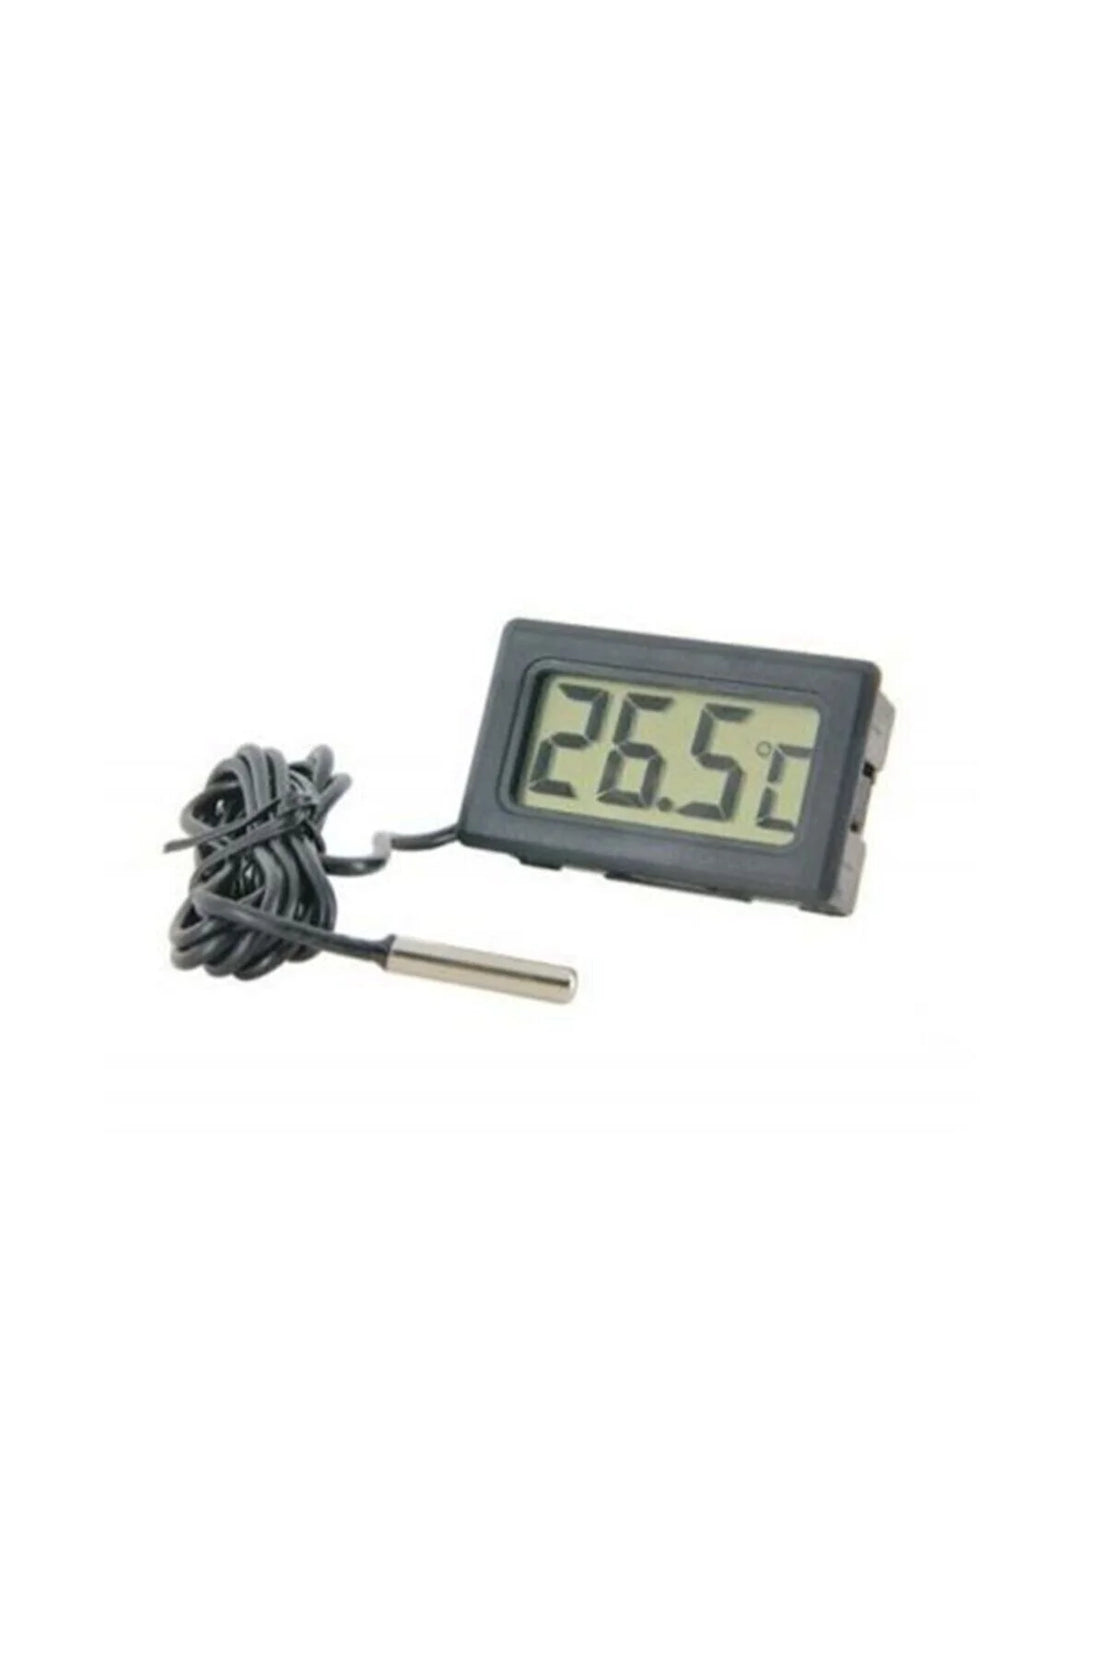 Tpm-10 - Sıcaklık Ölçer - Mini Dijital Prob Dijital Termometre